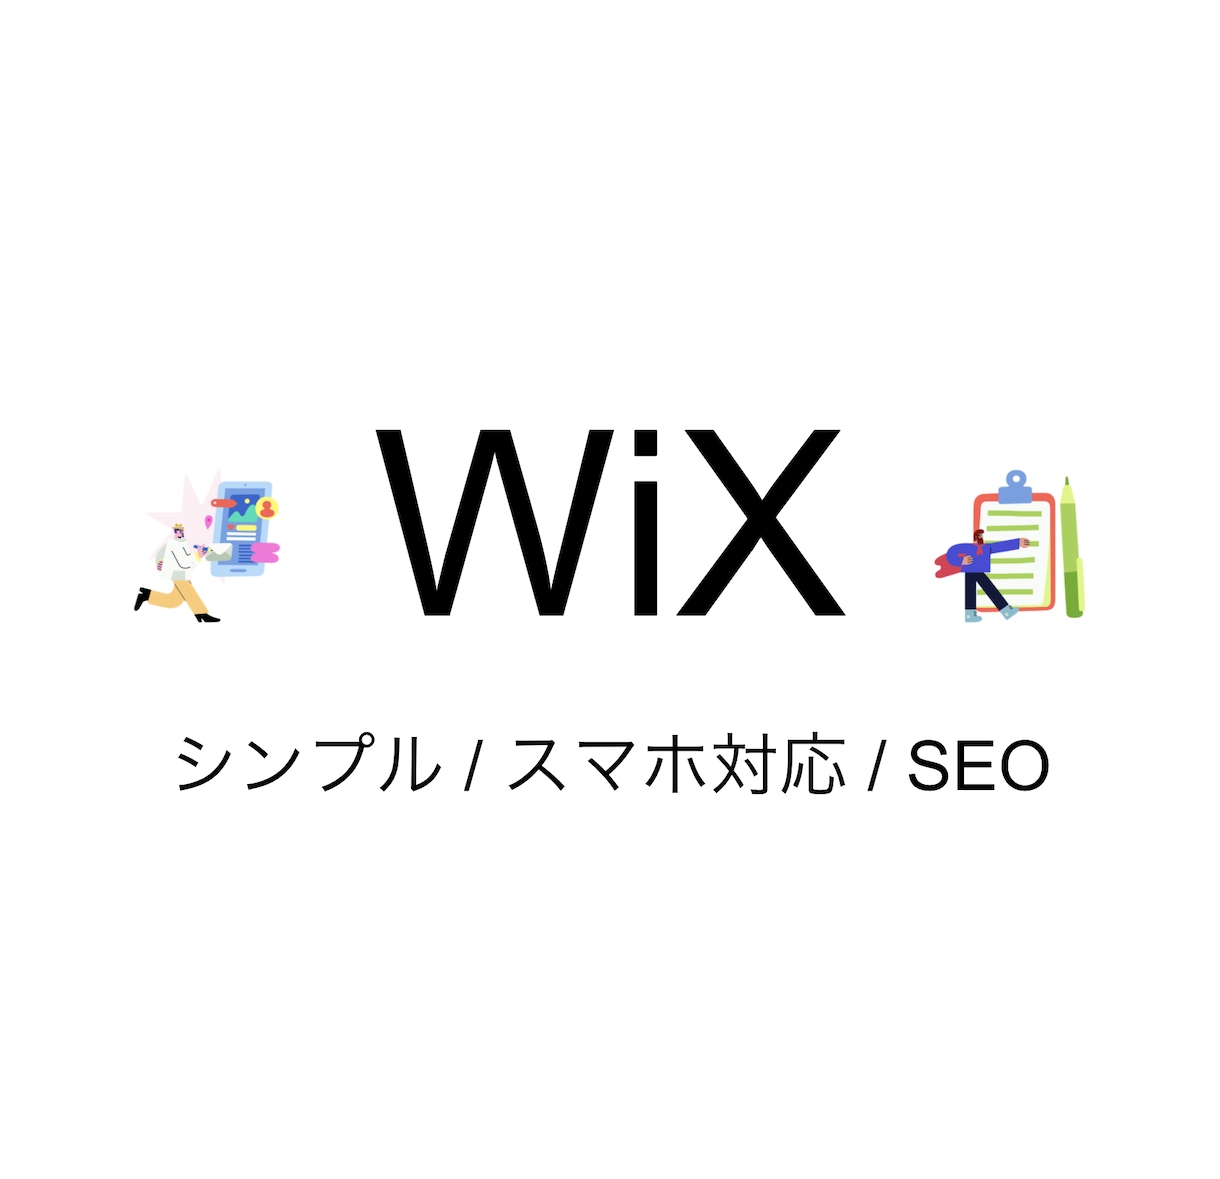 スマホ対応! Wixでホームページ作ります スマホ対応! SEOが考慮されたWix集客サイト制作 イメージ1